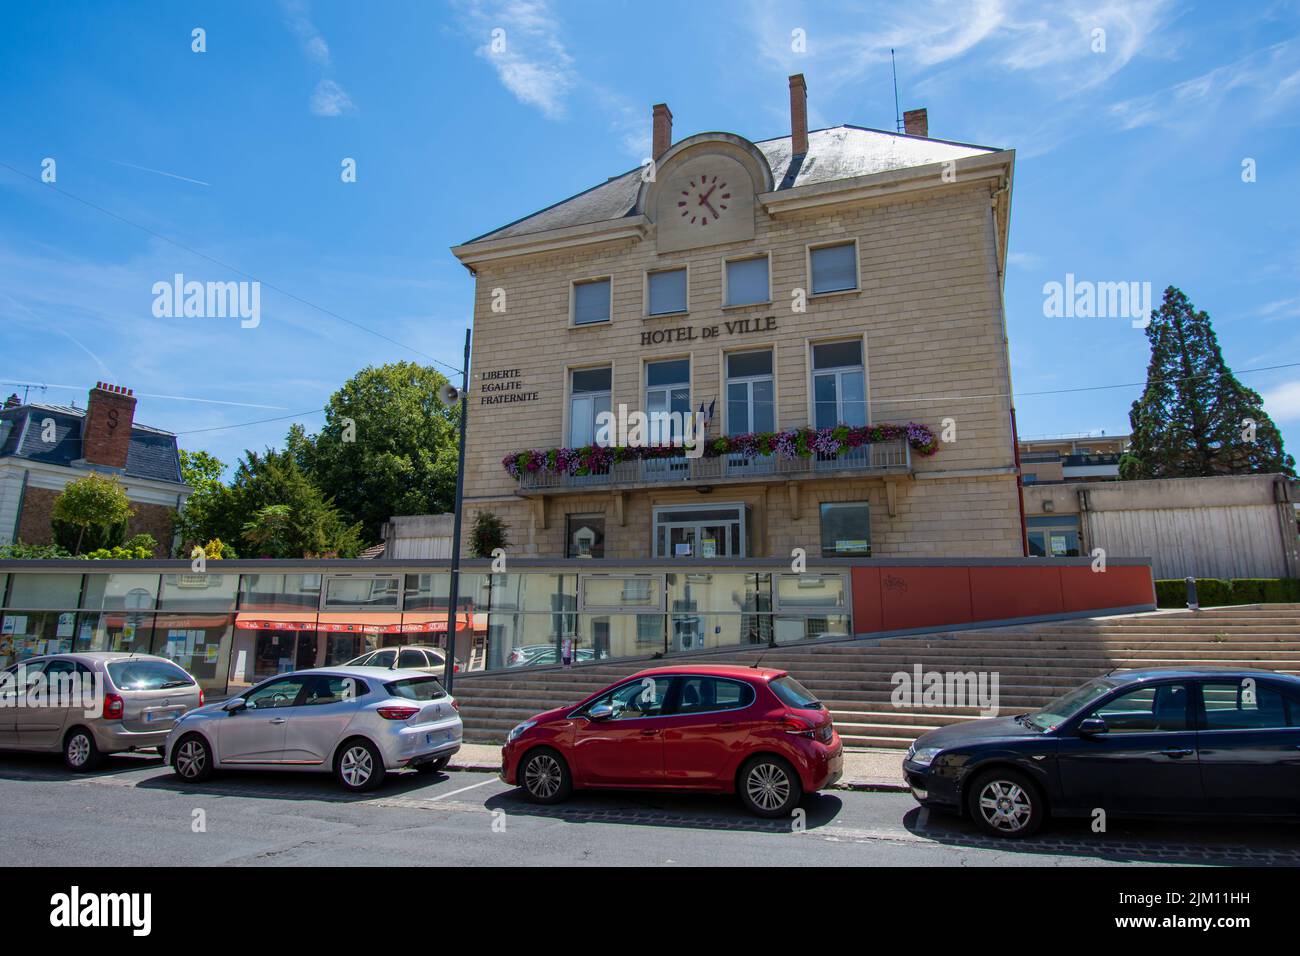 Vista esterna del municipio di Bures-sur-Yvette, Francia, una città situata a sud-ovest di Parigi, nel dipartimento francese di Essonne Foto Stock